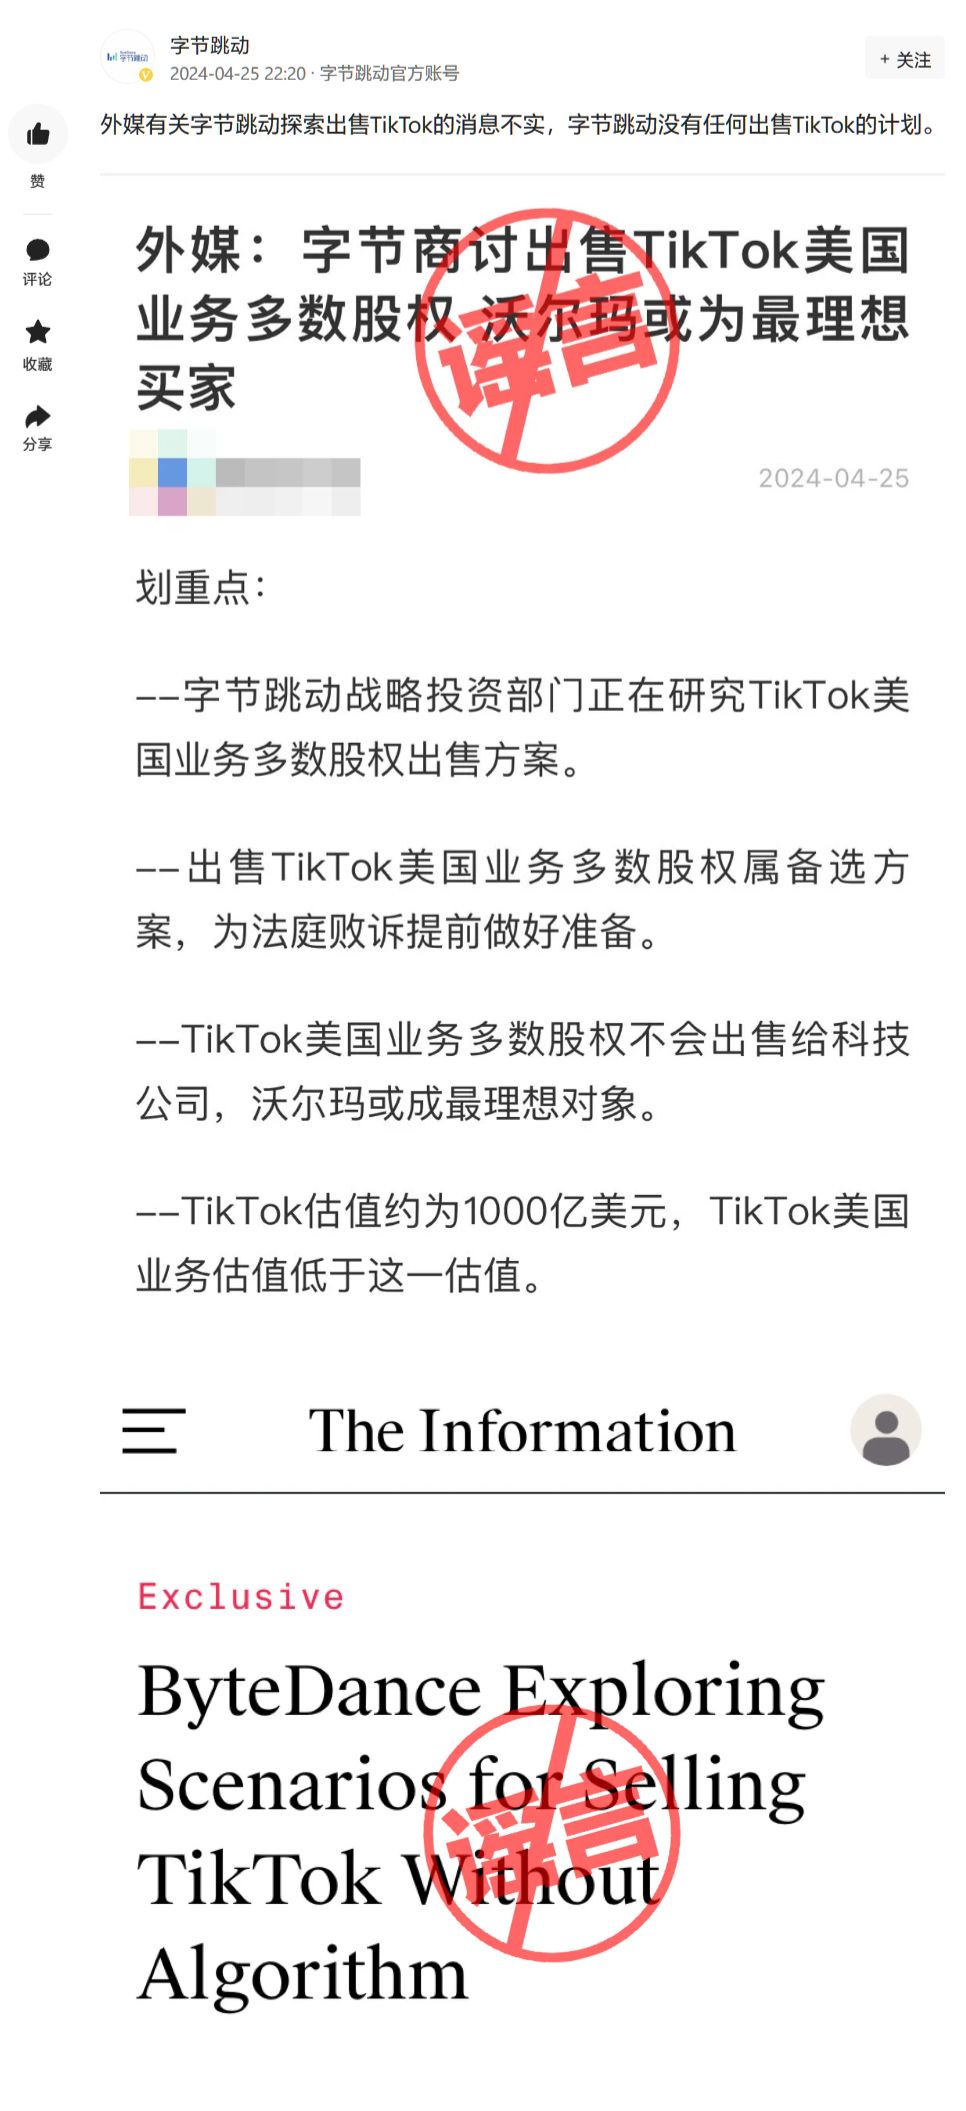 字节跳动称公司探索出售TikTok消息不实